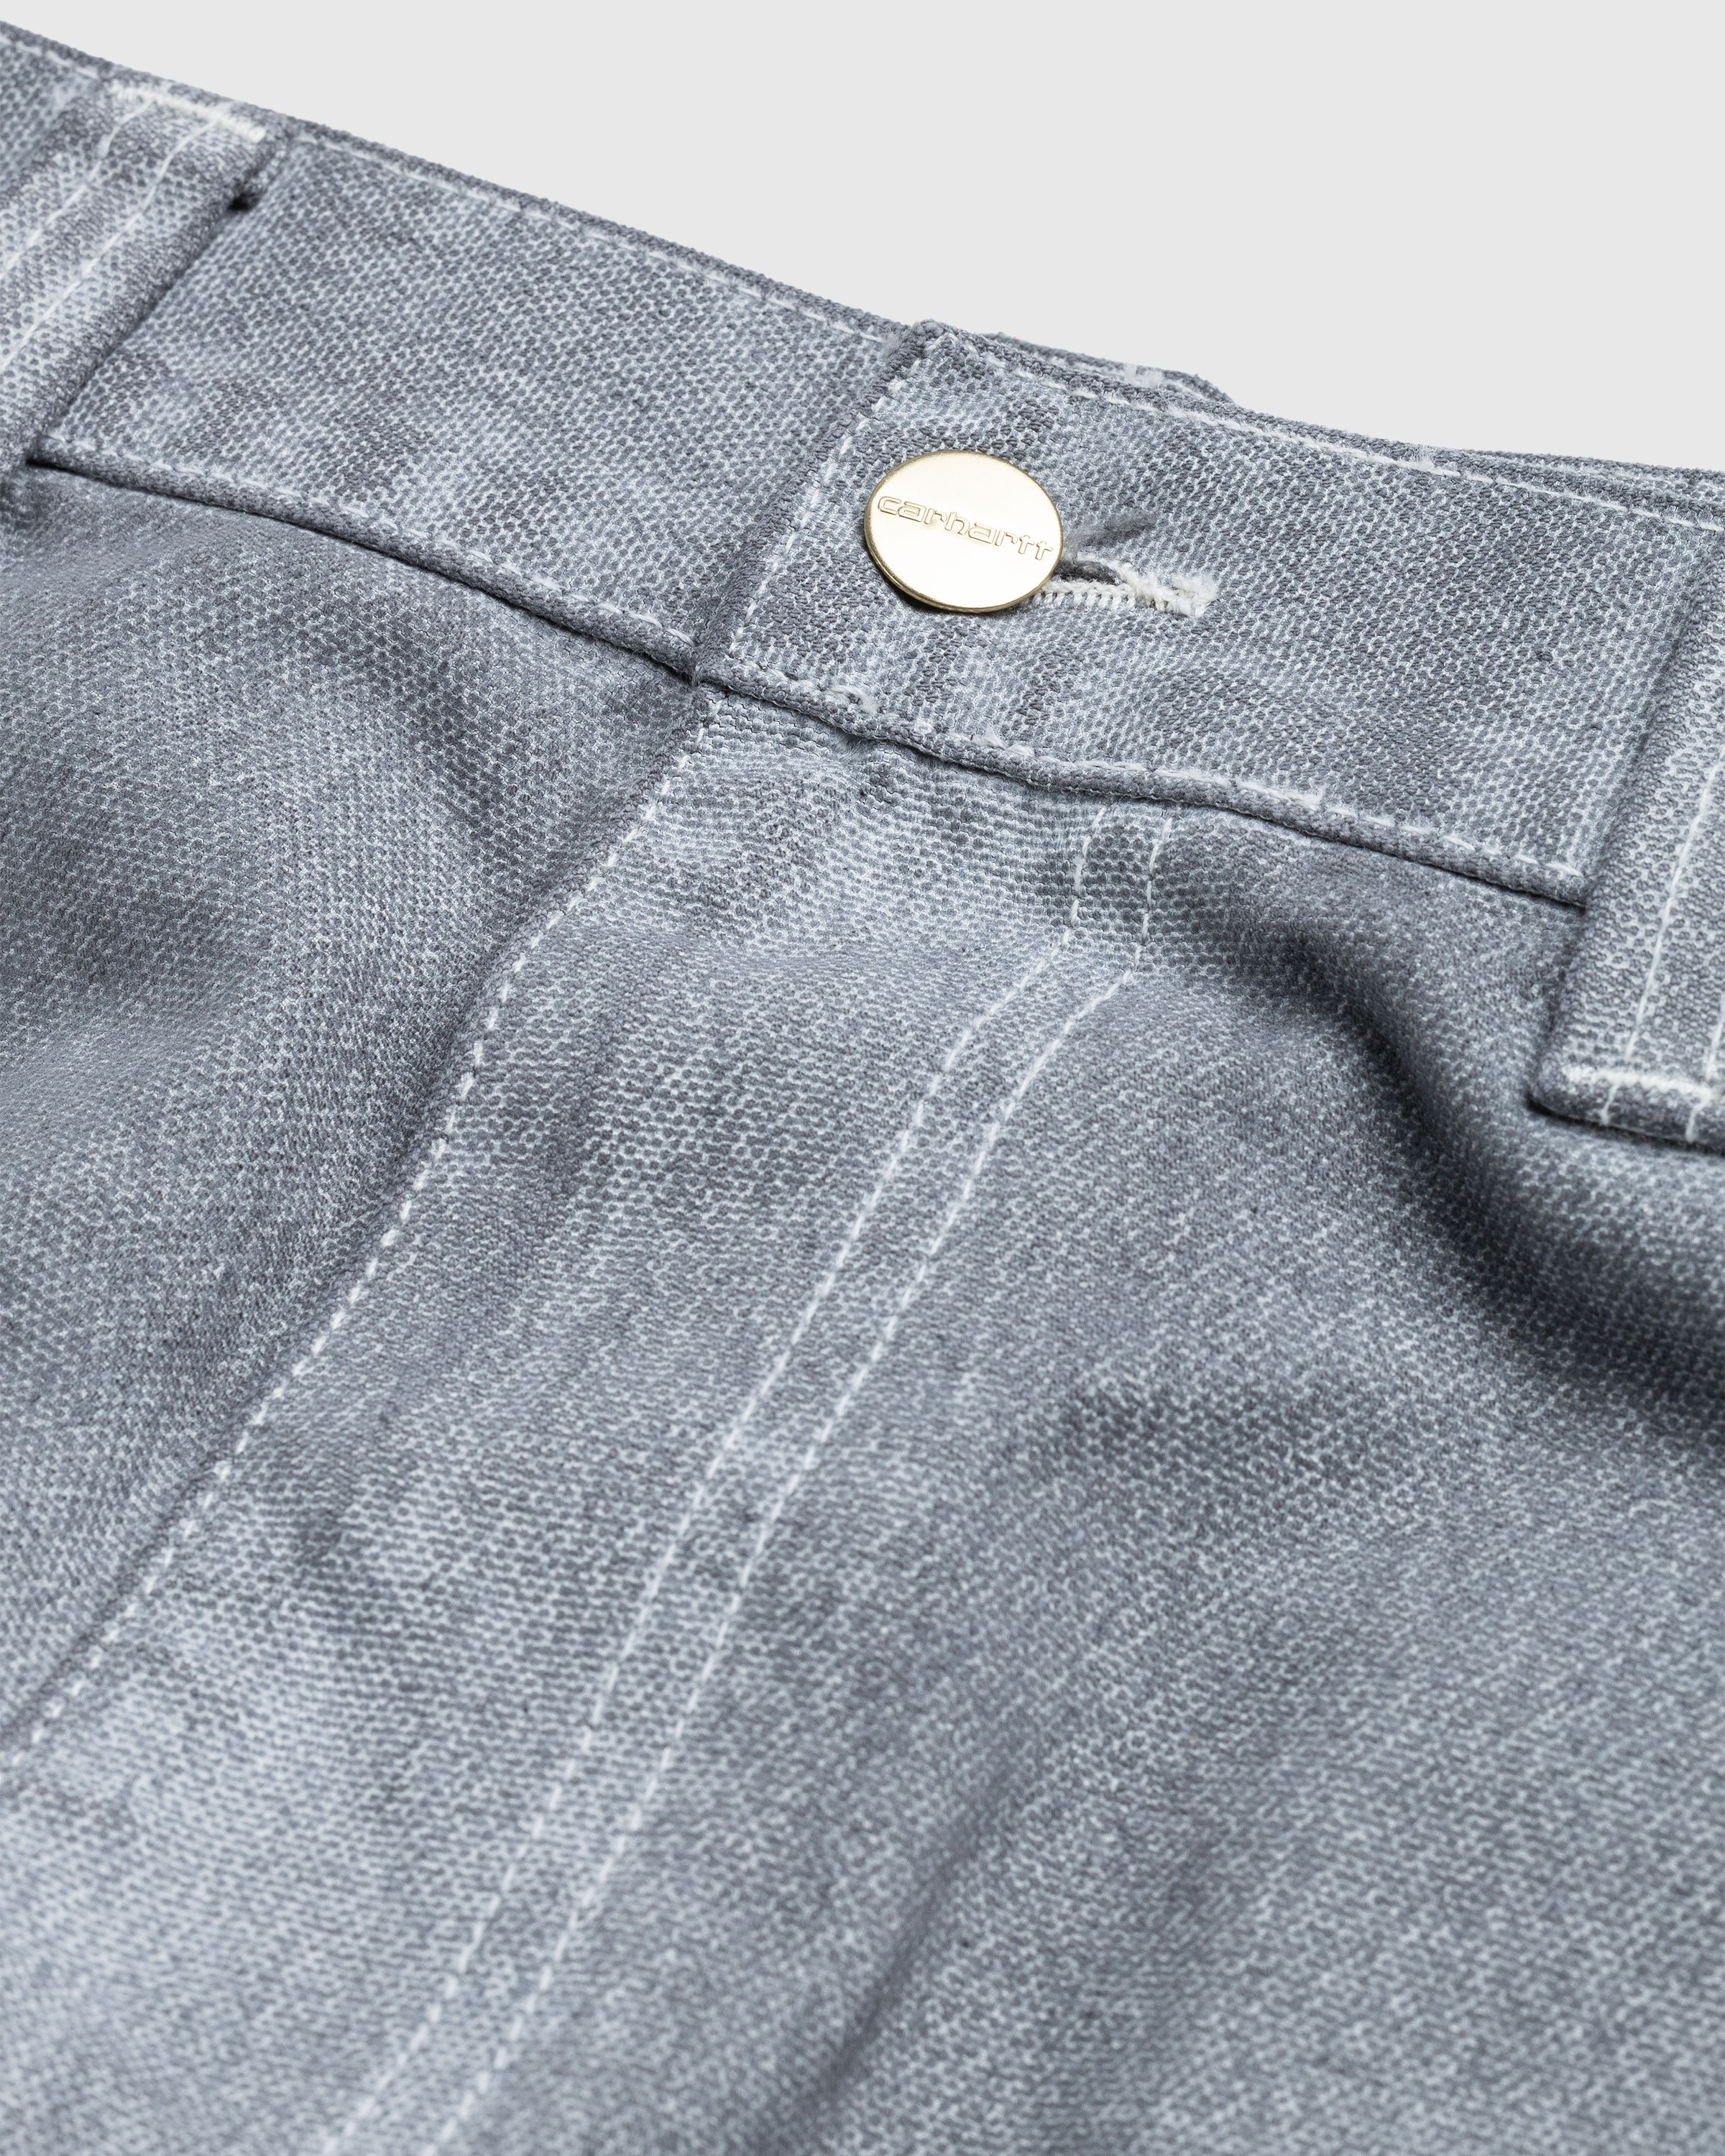 Carhartt WIP - OG Single Knee Pant Wax/Blacksmith/Stone Washed - Clothing - Grey - Image 5